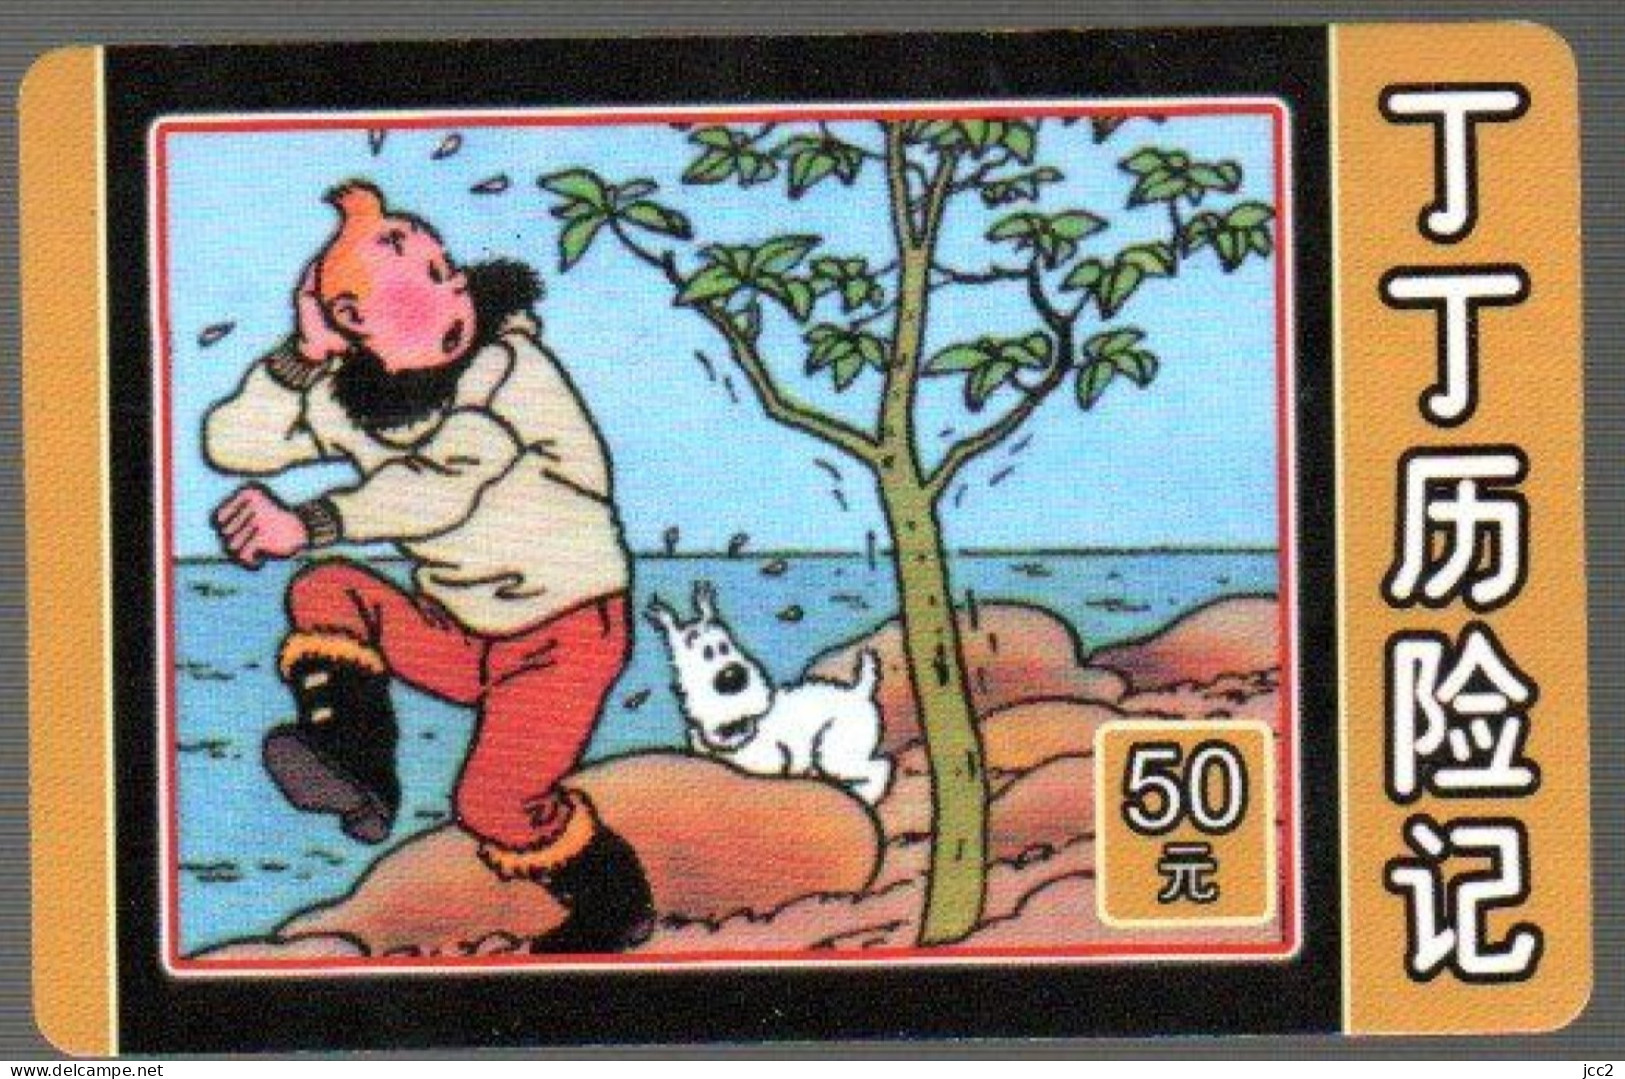 Tintin & Milou - BD